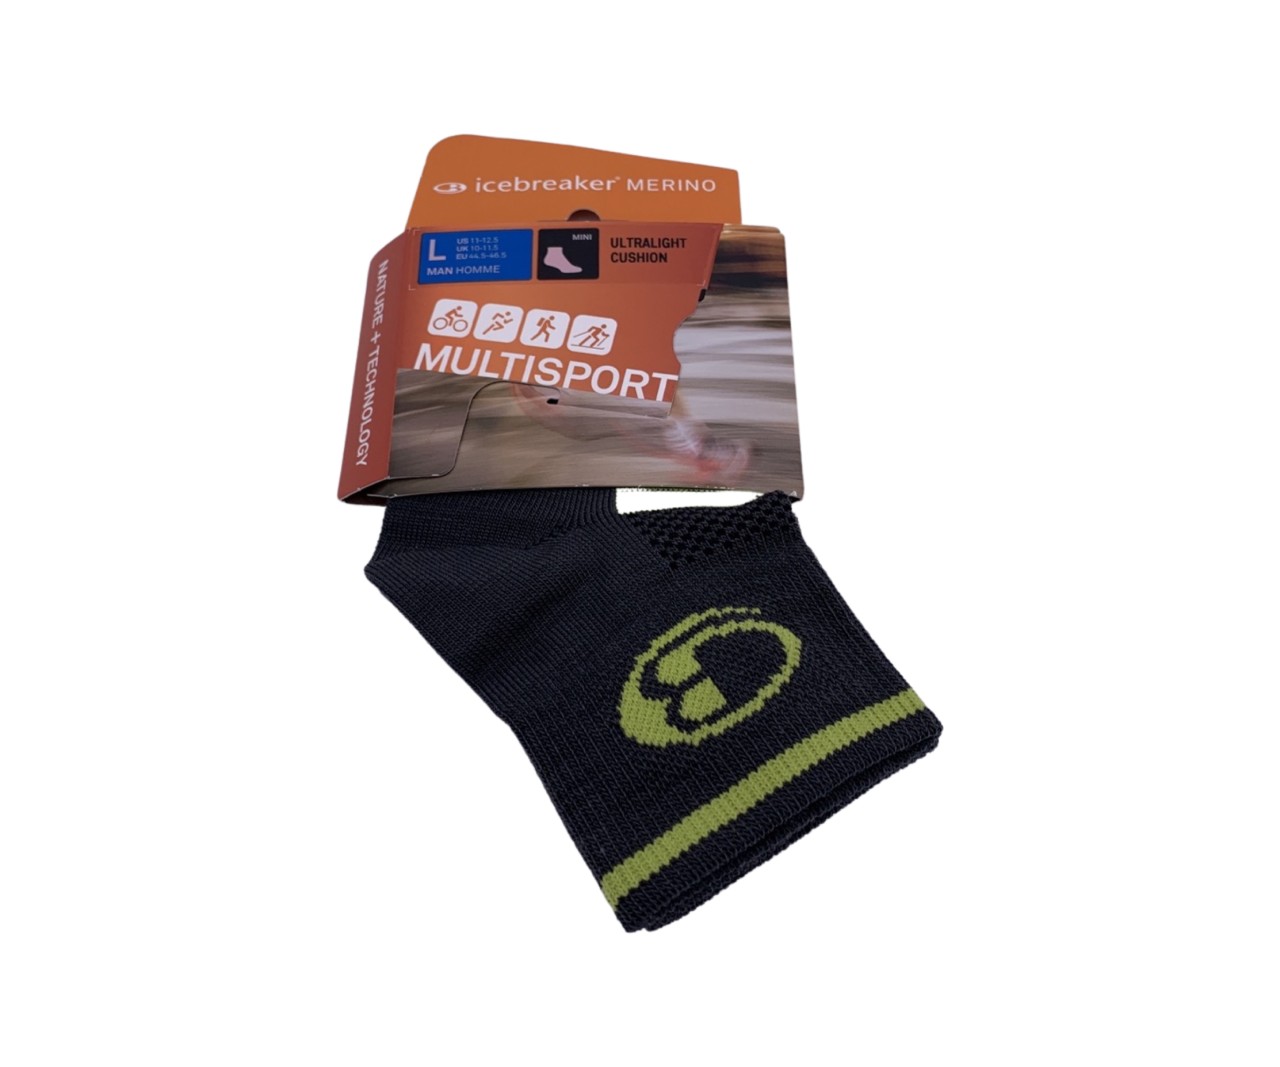 Icebreaker Multisport Ultra Light Socke, grau/gelb, L Man Merino